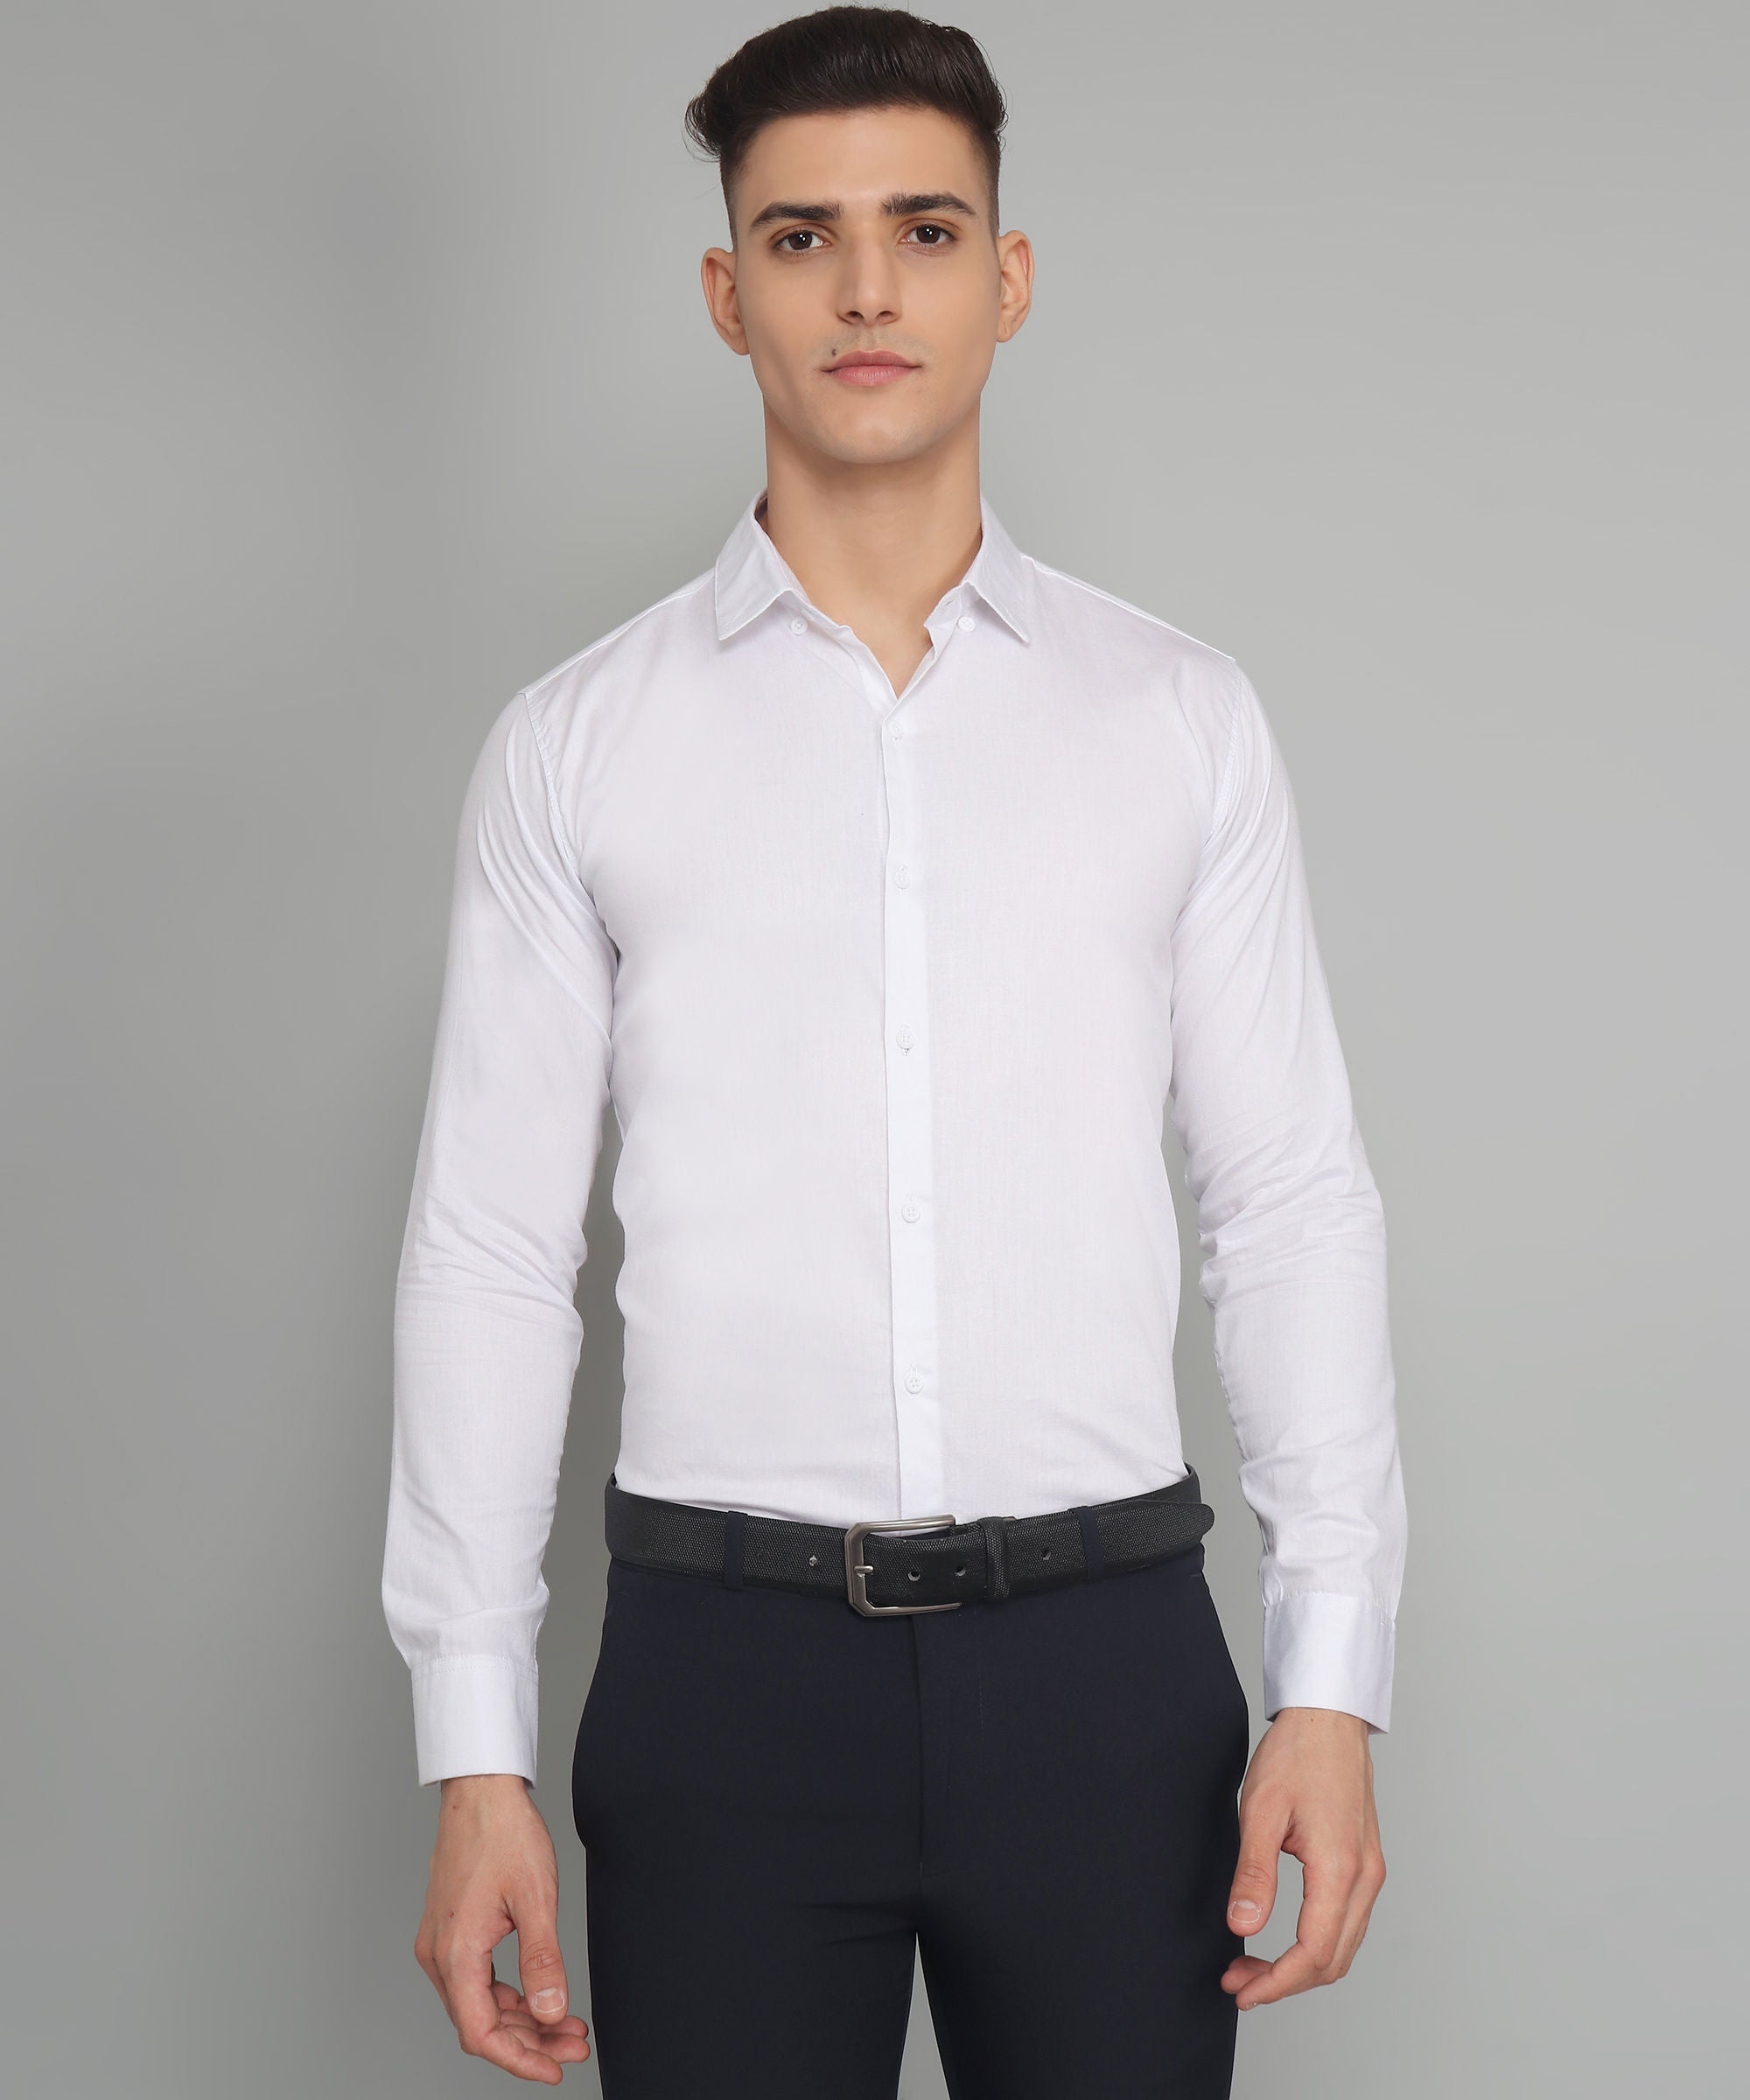 पुरुषों के लिए विशेष TryBuy प्रीमियम सफेद कैज़ुअल/फॉर्मल शर्ट